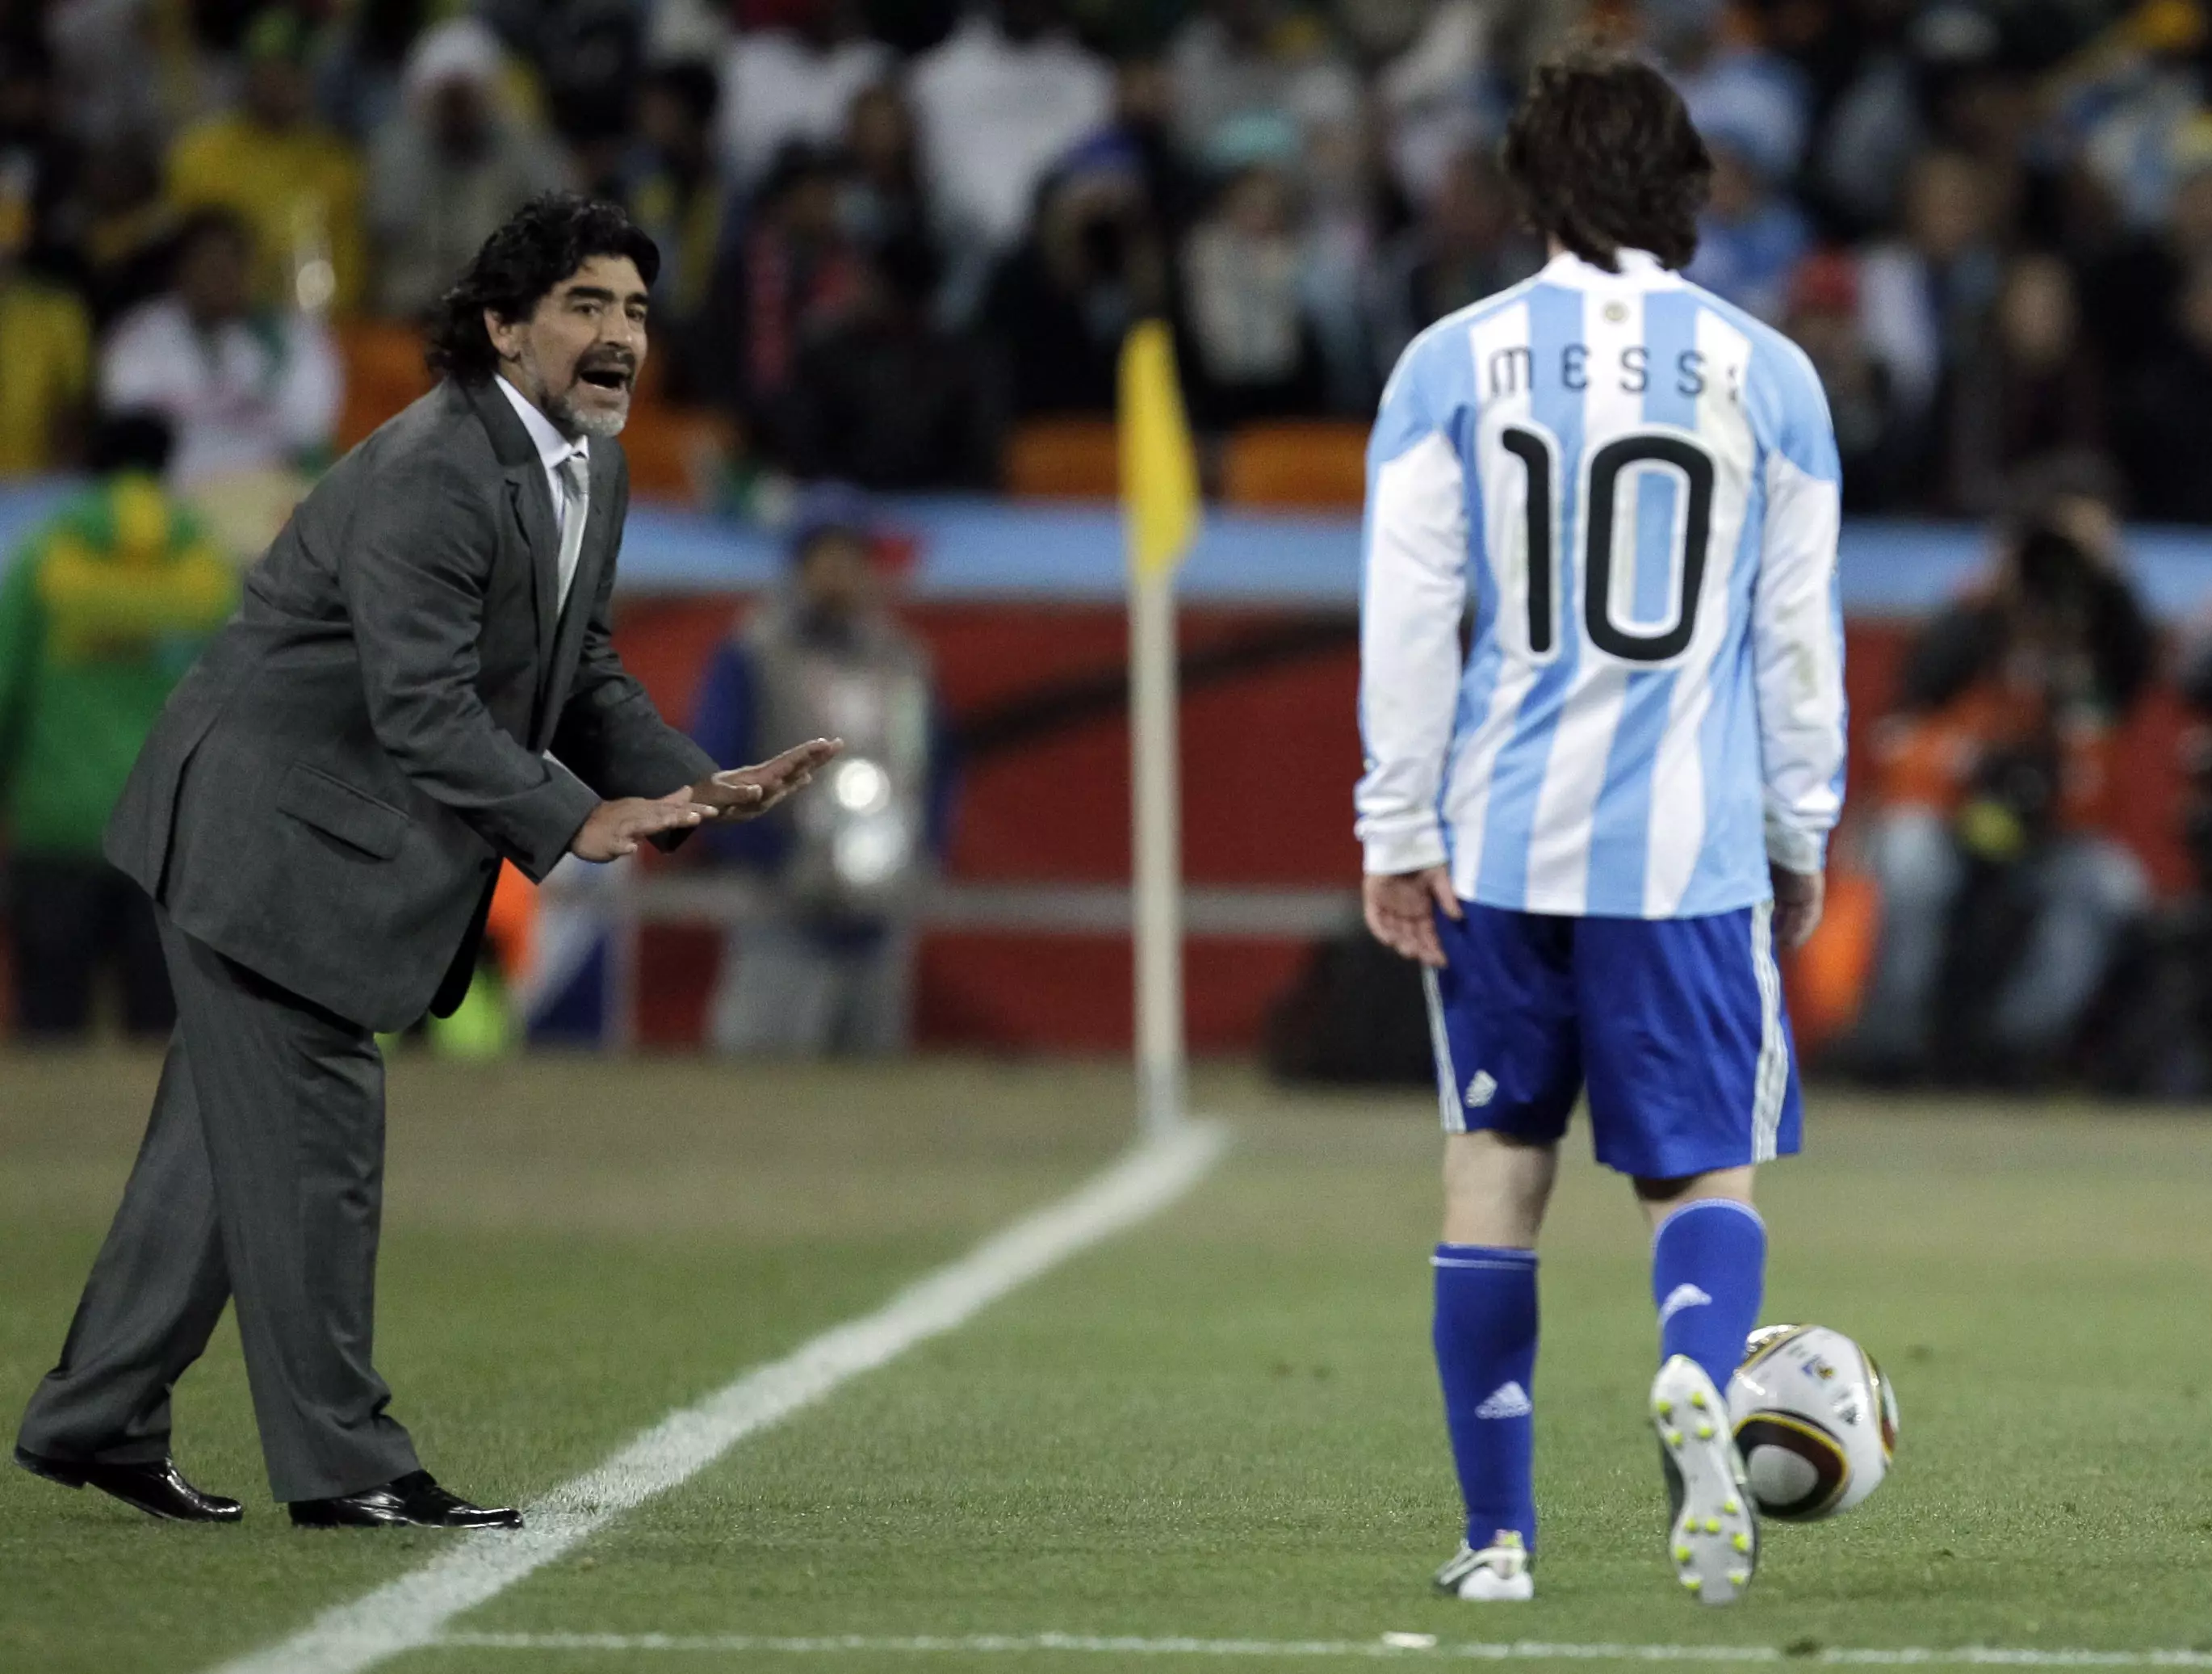 Maradona managed Messi for Argentina. Image: PA Images